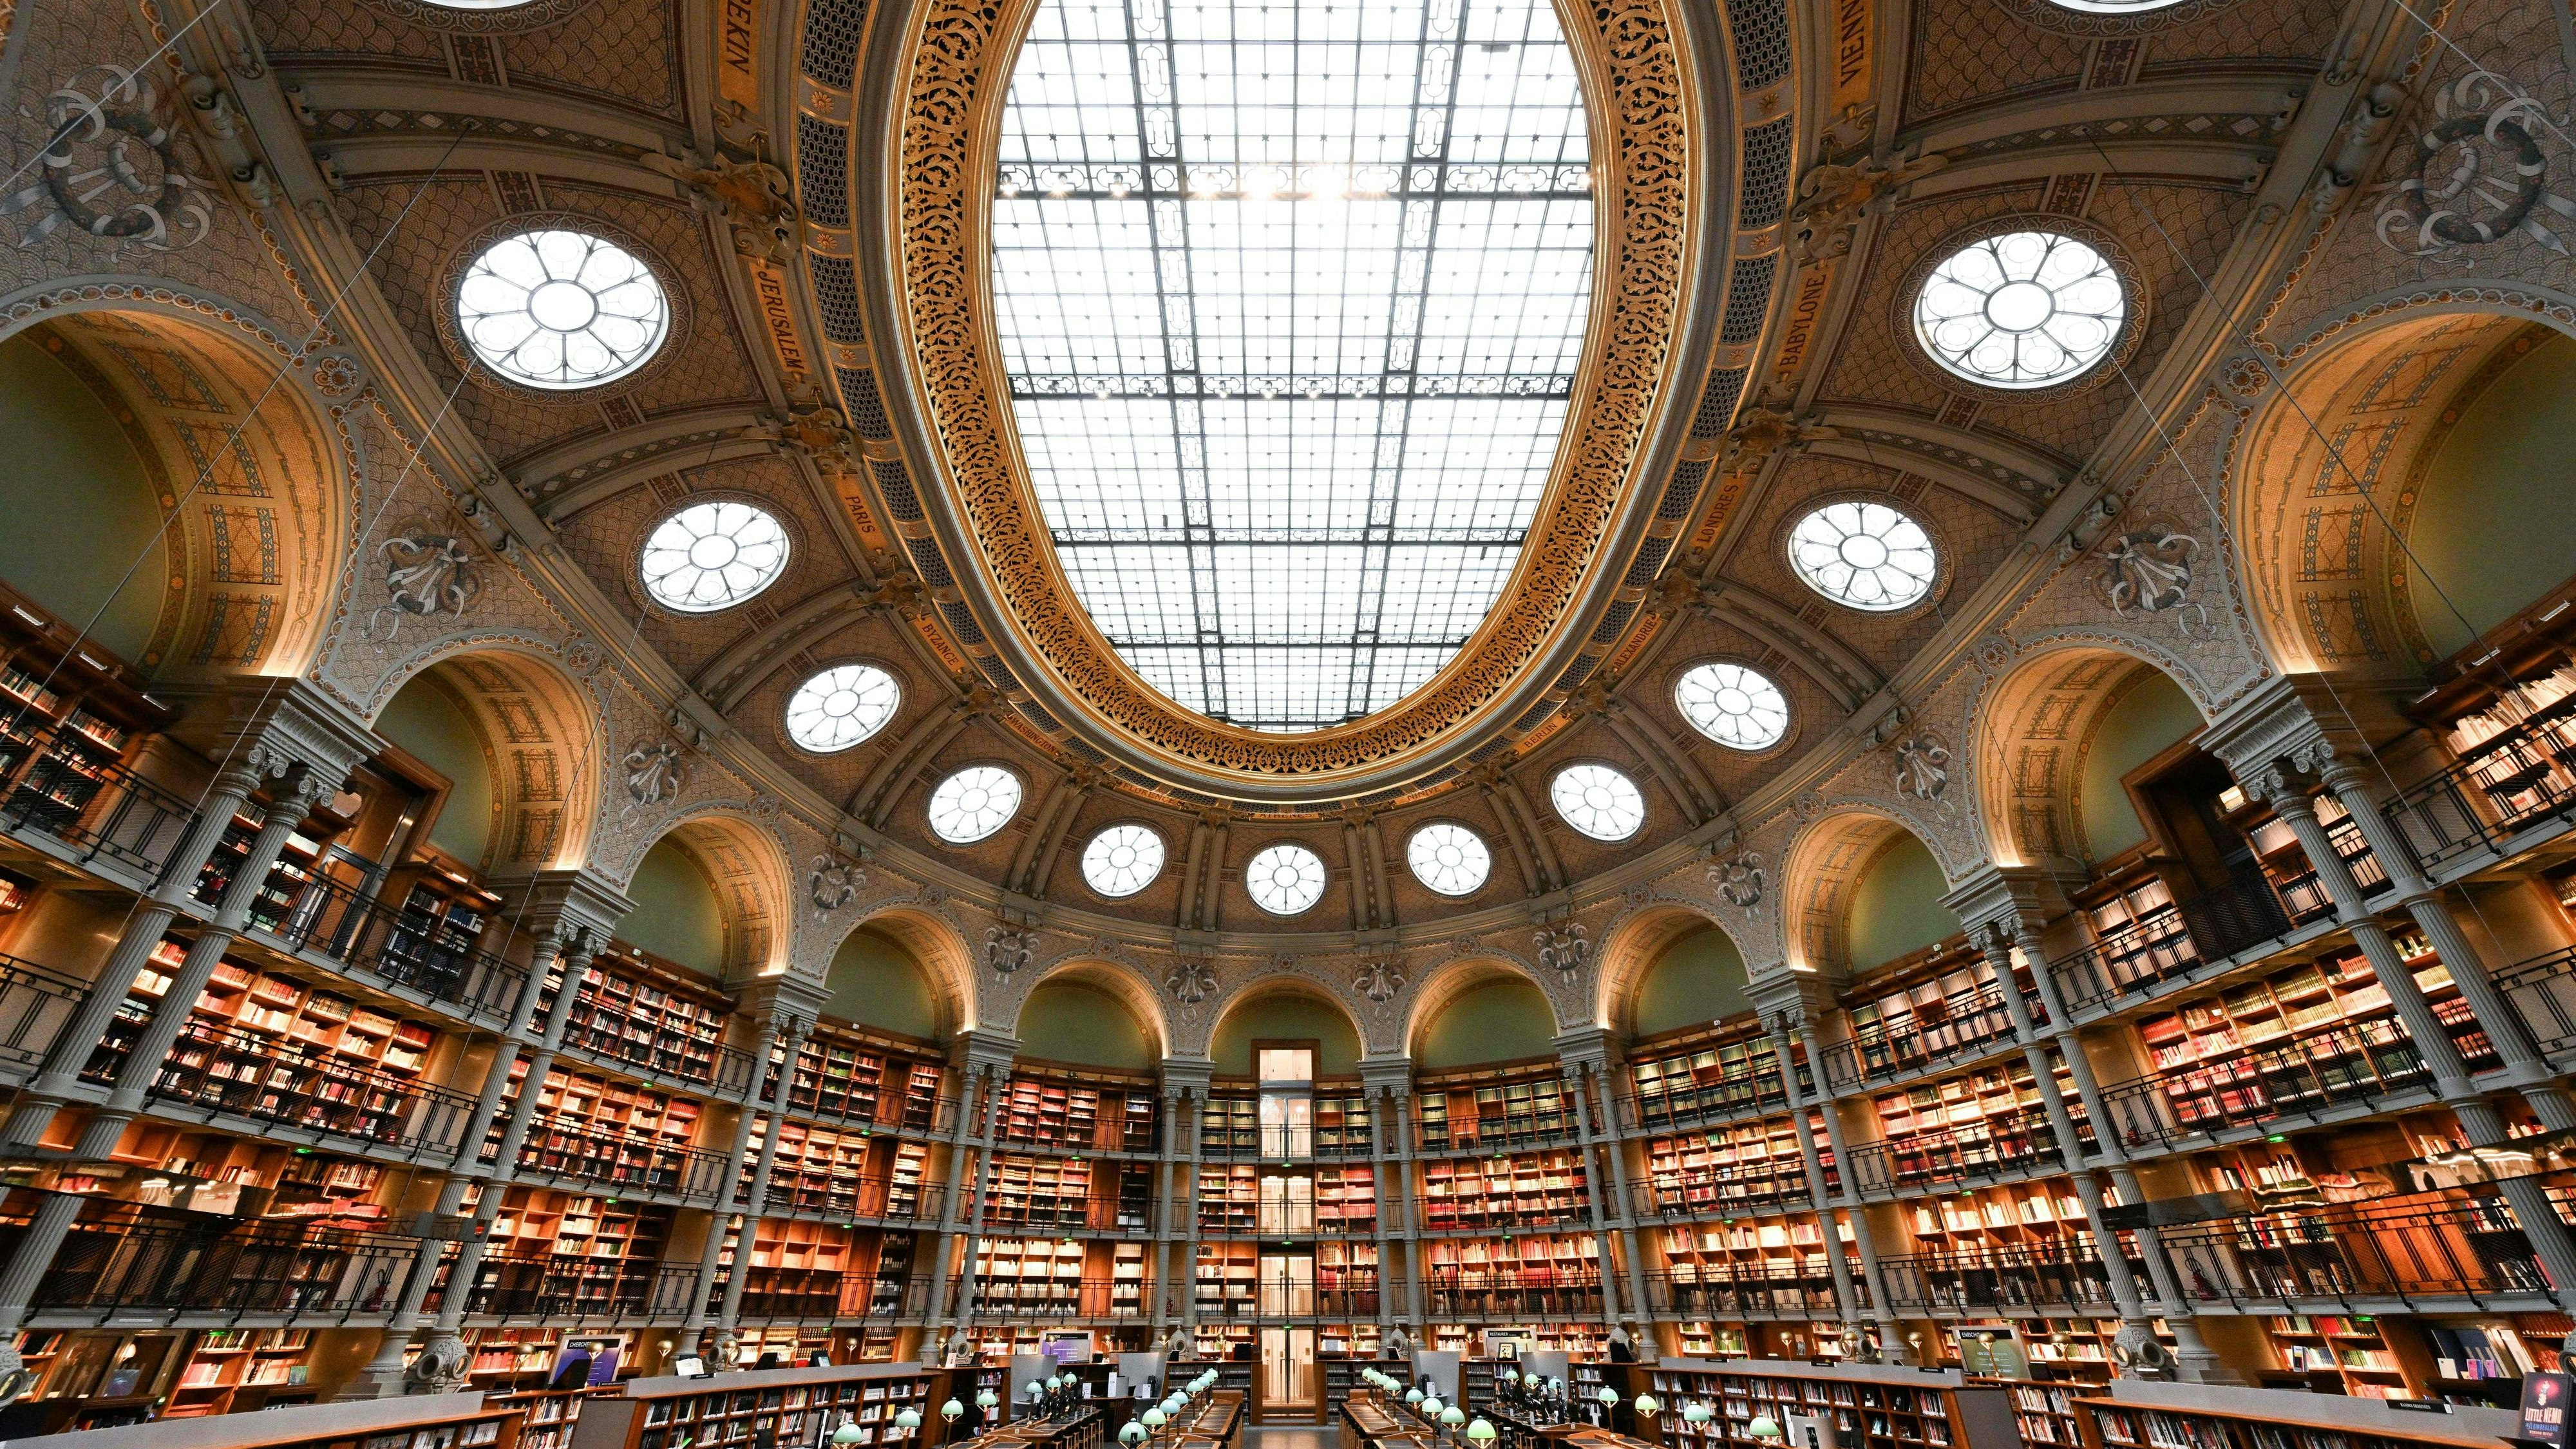 Bibliotheque Nationale de France in Paris: Alleine hier wurden insgesamt acht bedeutsame Puschkin-Ausgaben mit einem Gesamtwert von 450.000 bis 650.000 Euro gestohlen